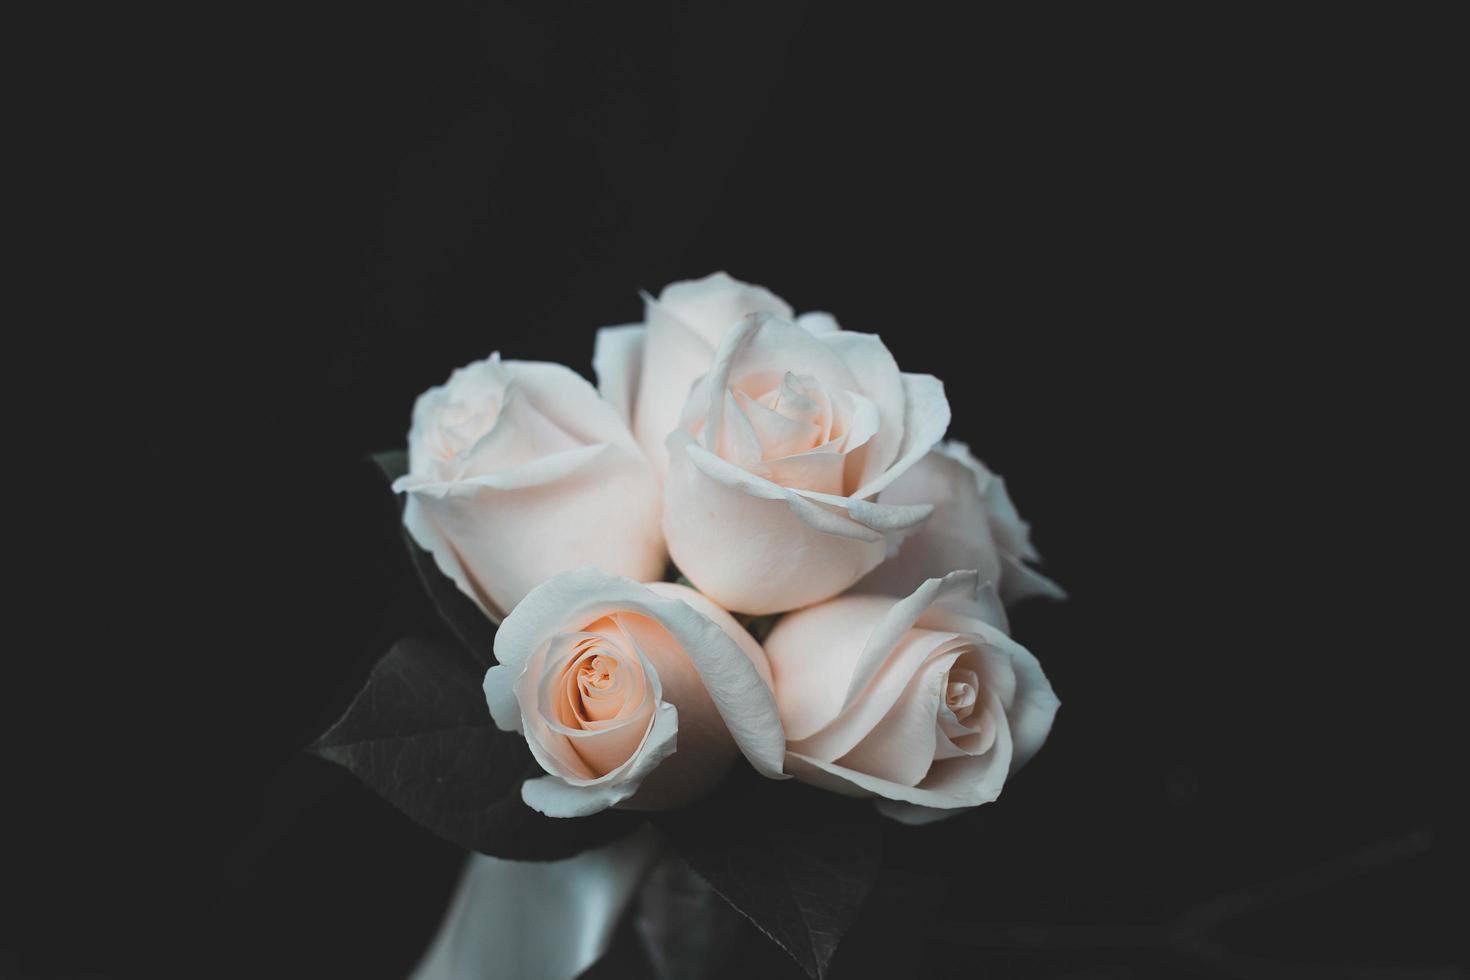 rosas blancas sobre una superficie negra foto